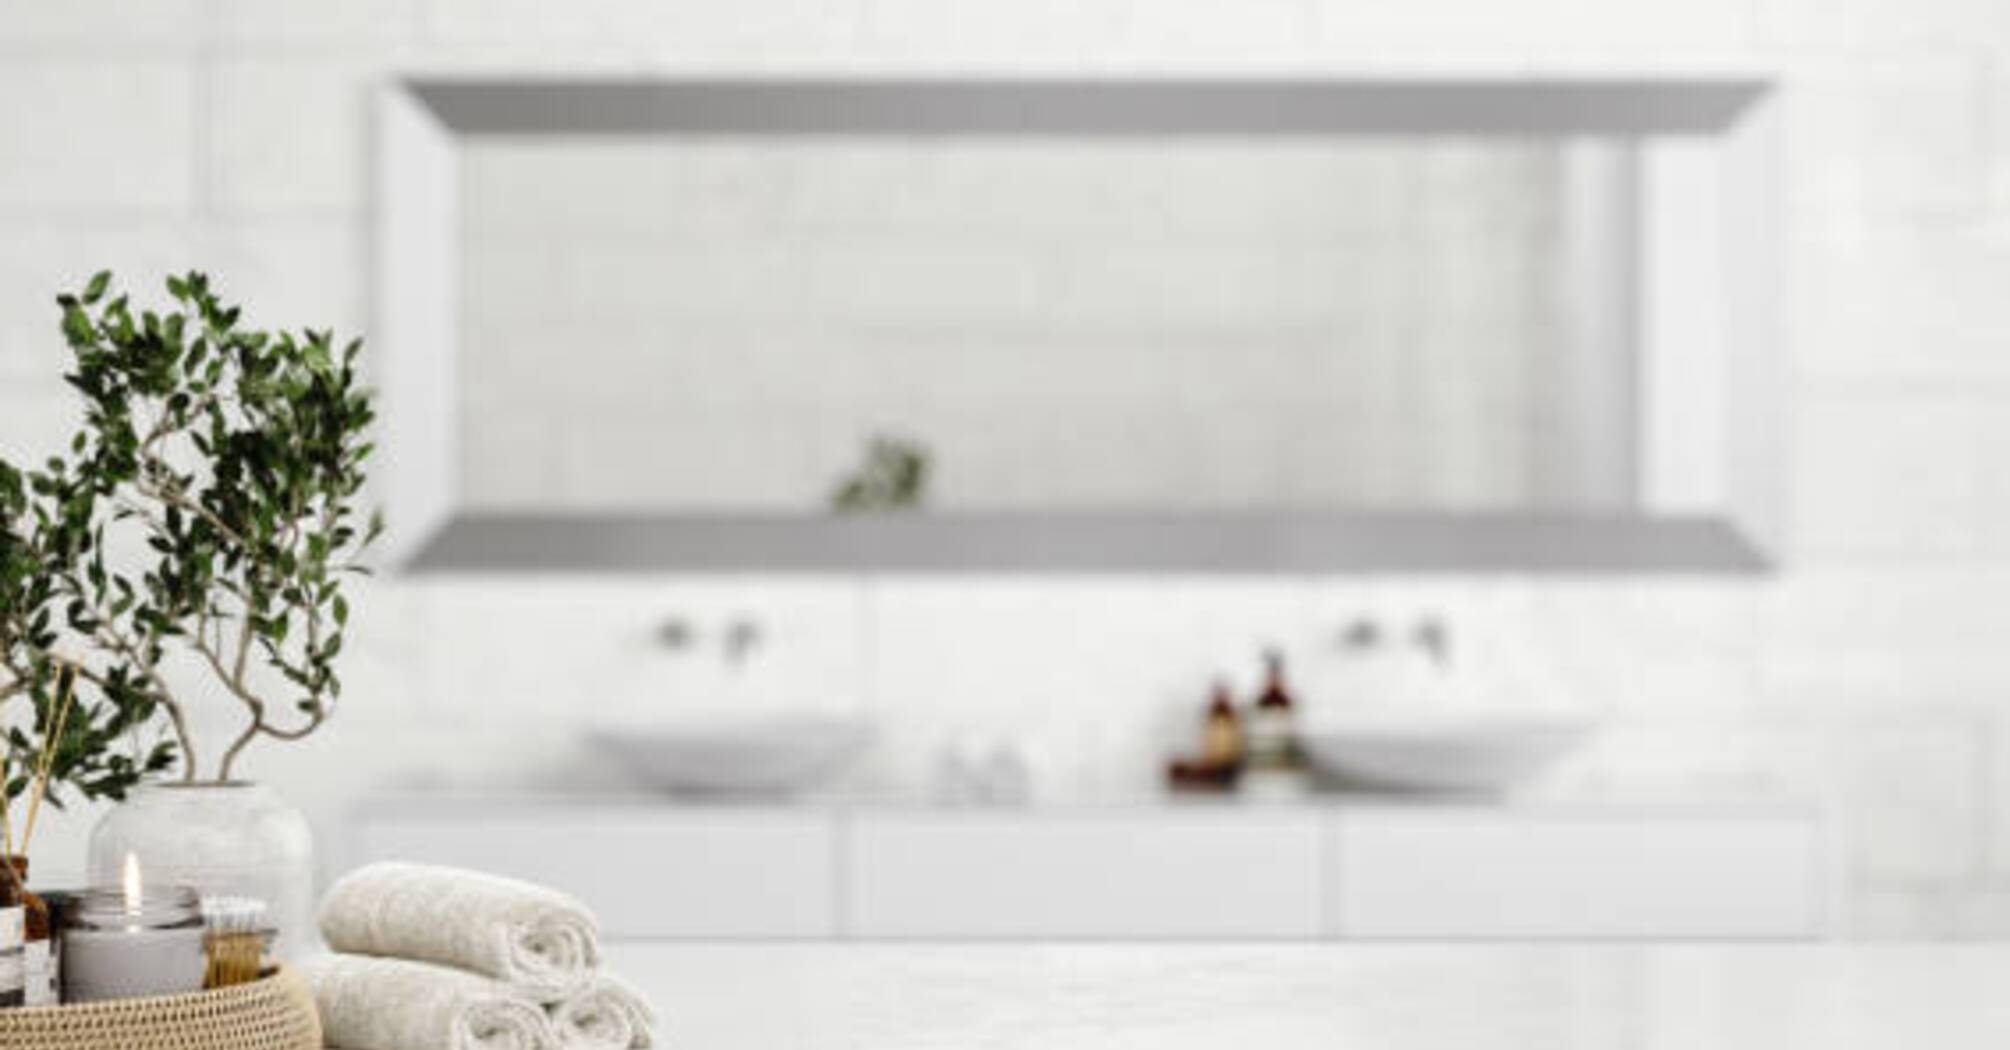 Як підтримувати чистоту у ванній кімнаті: 3 ефективних лайфхаки